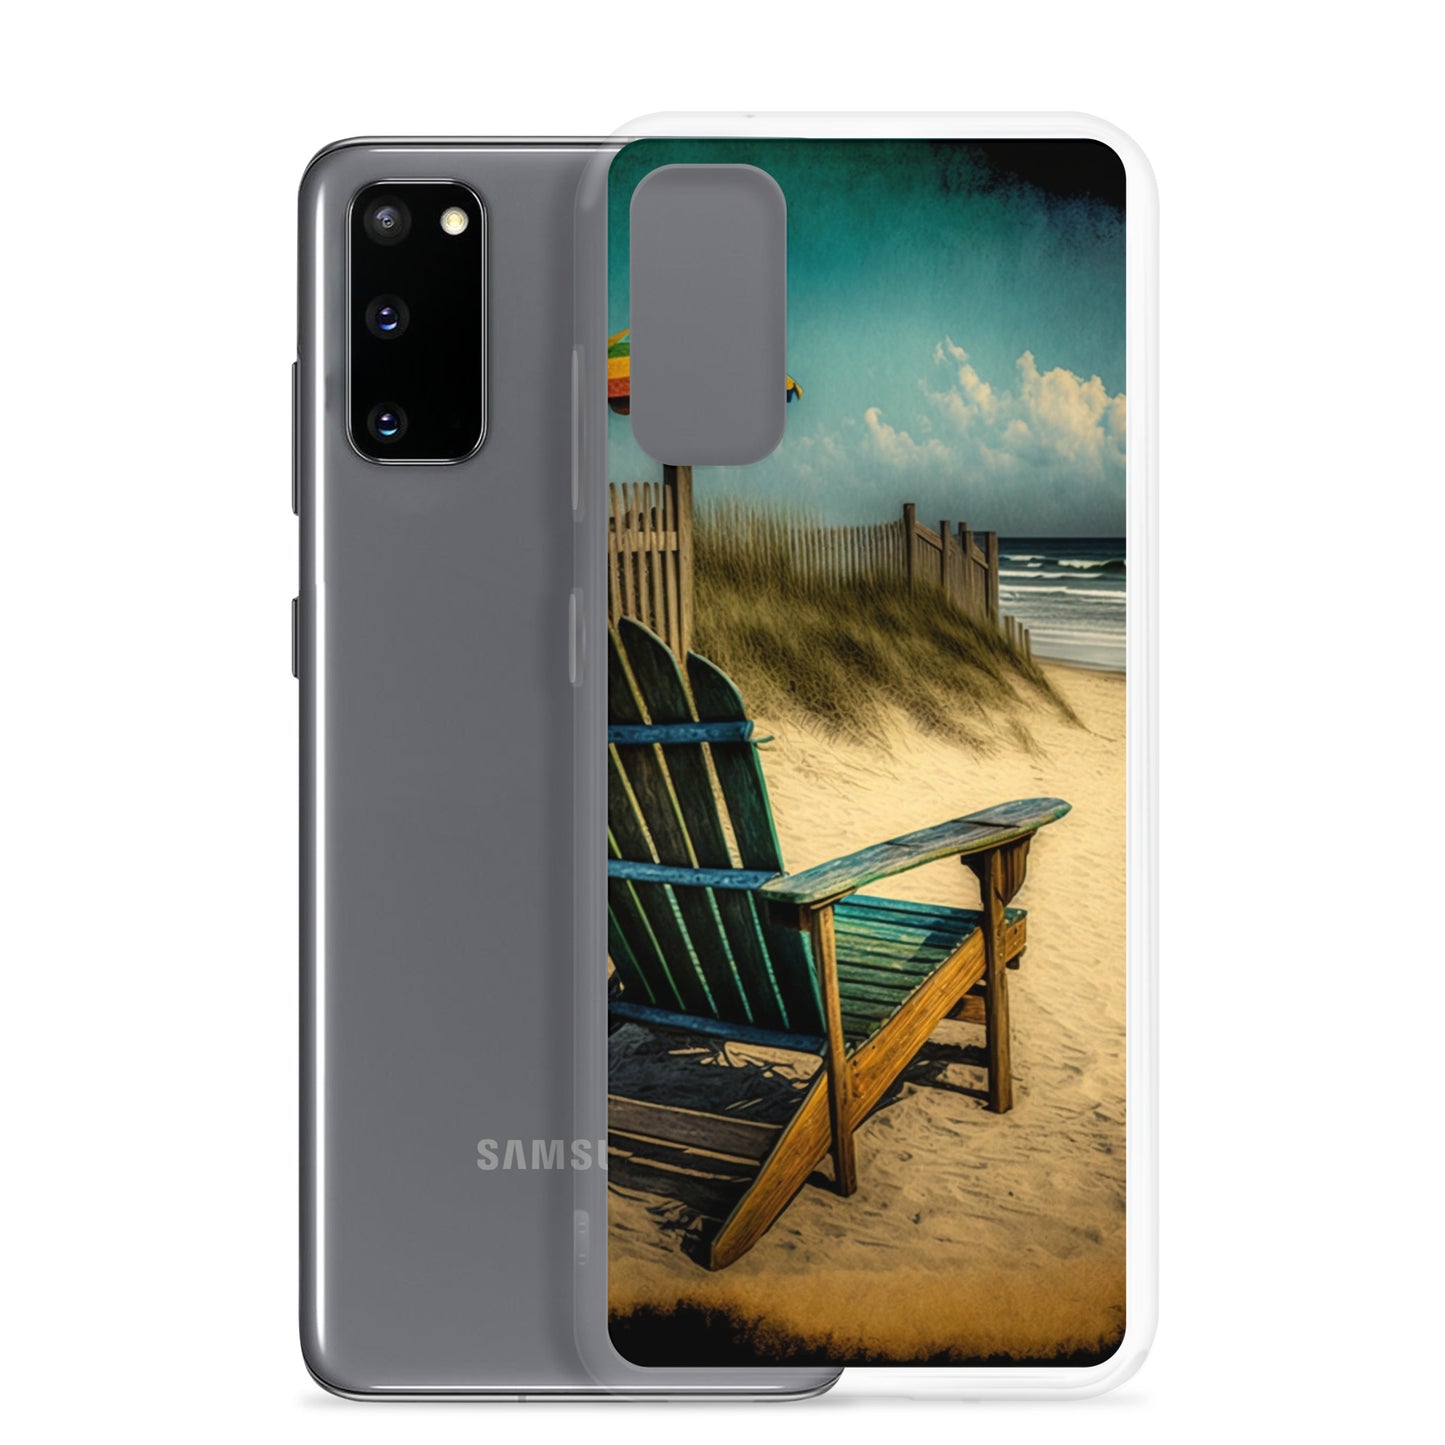 Samsung Case - Beach Life - Adirondack Chair